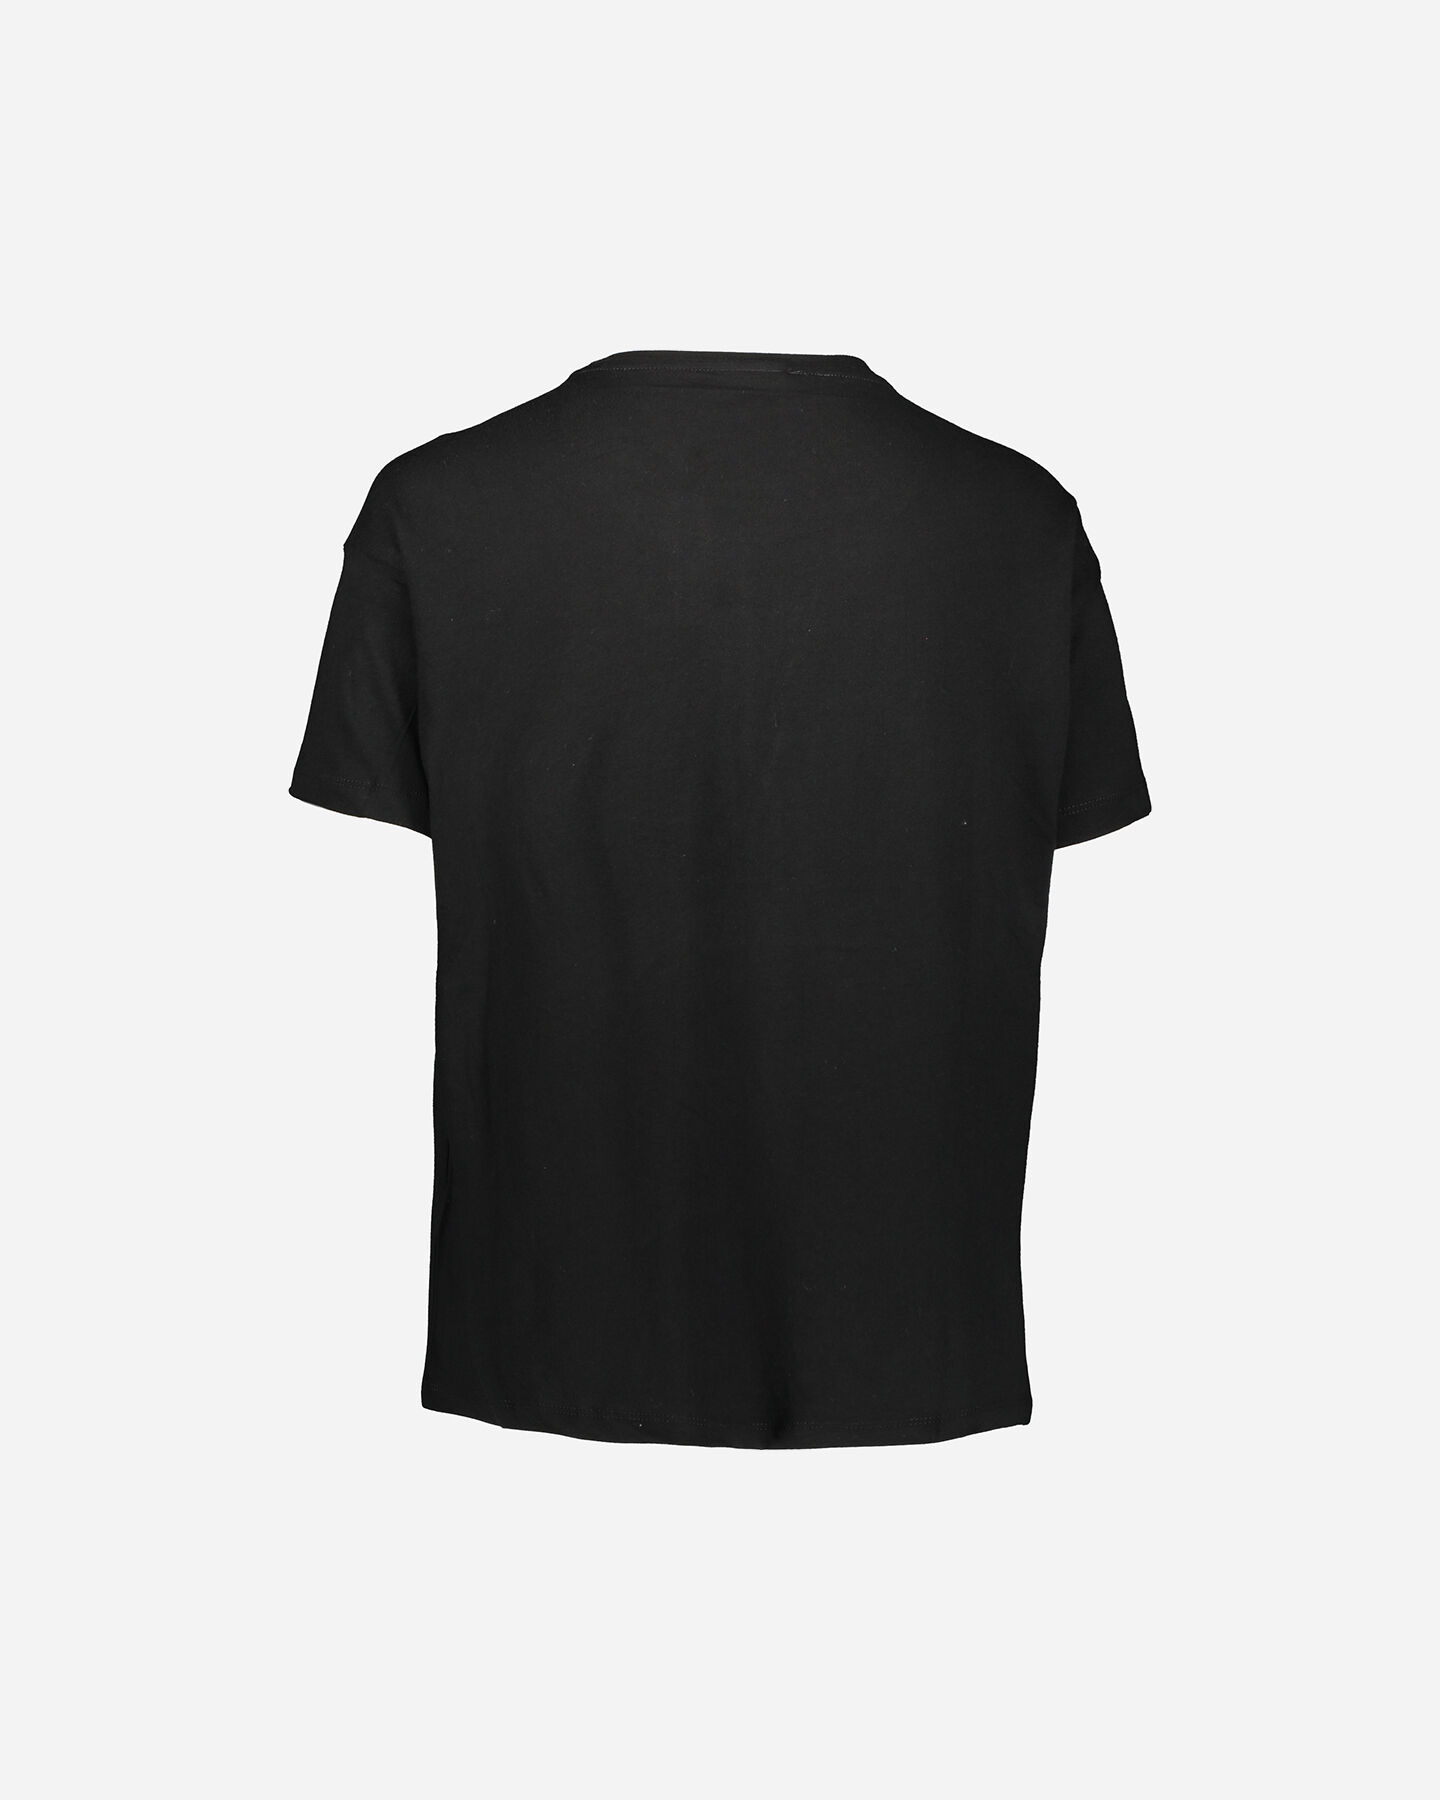  T-Shirt FREDDY BIG LOGO W S5245269 scatto 1